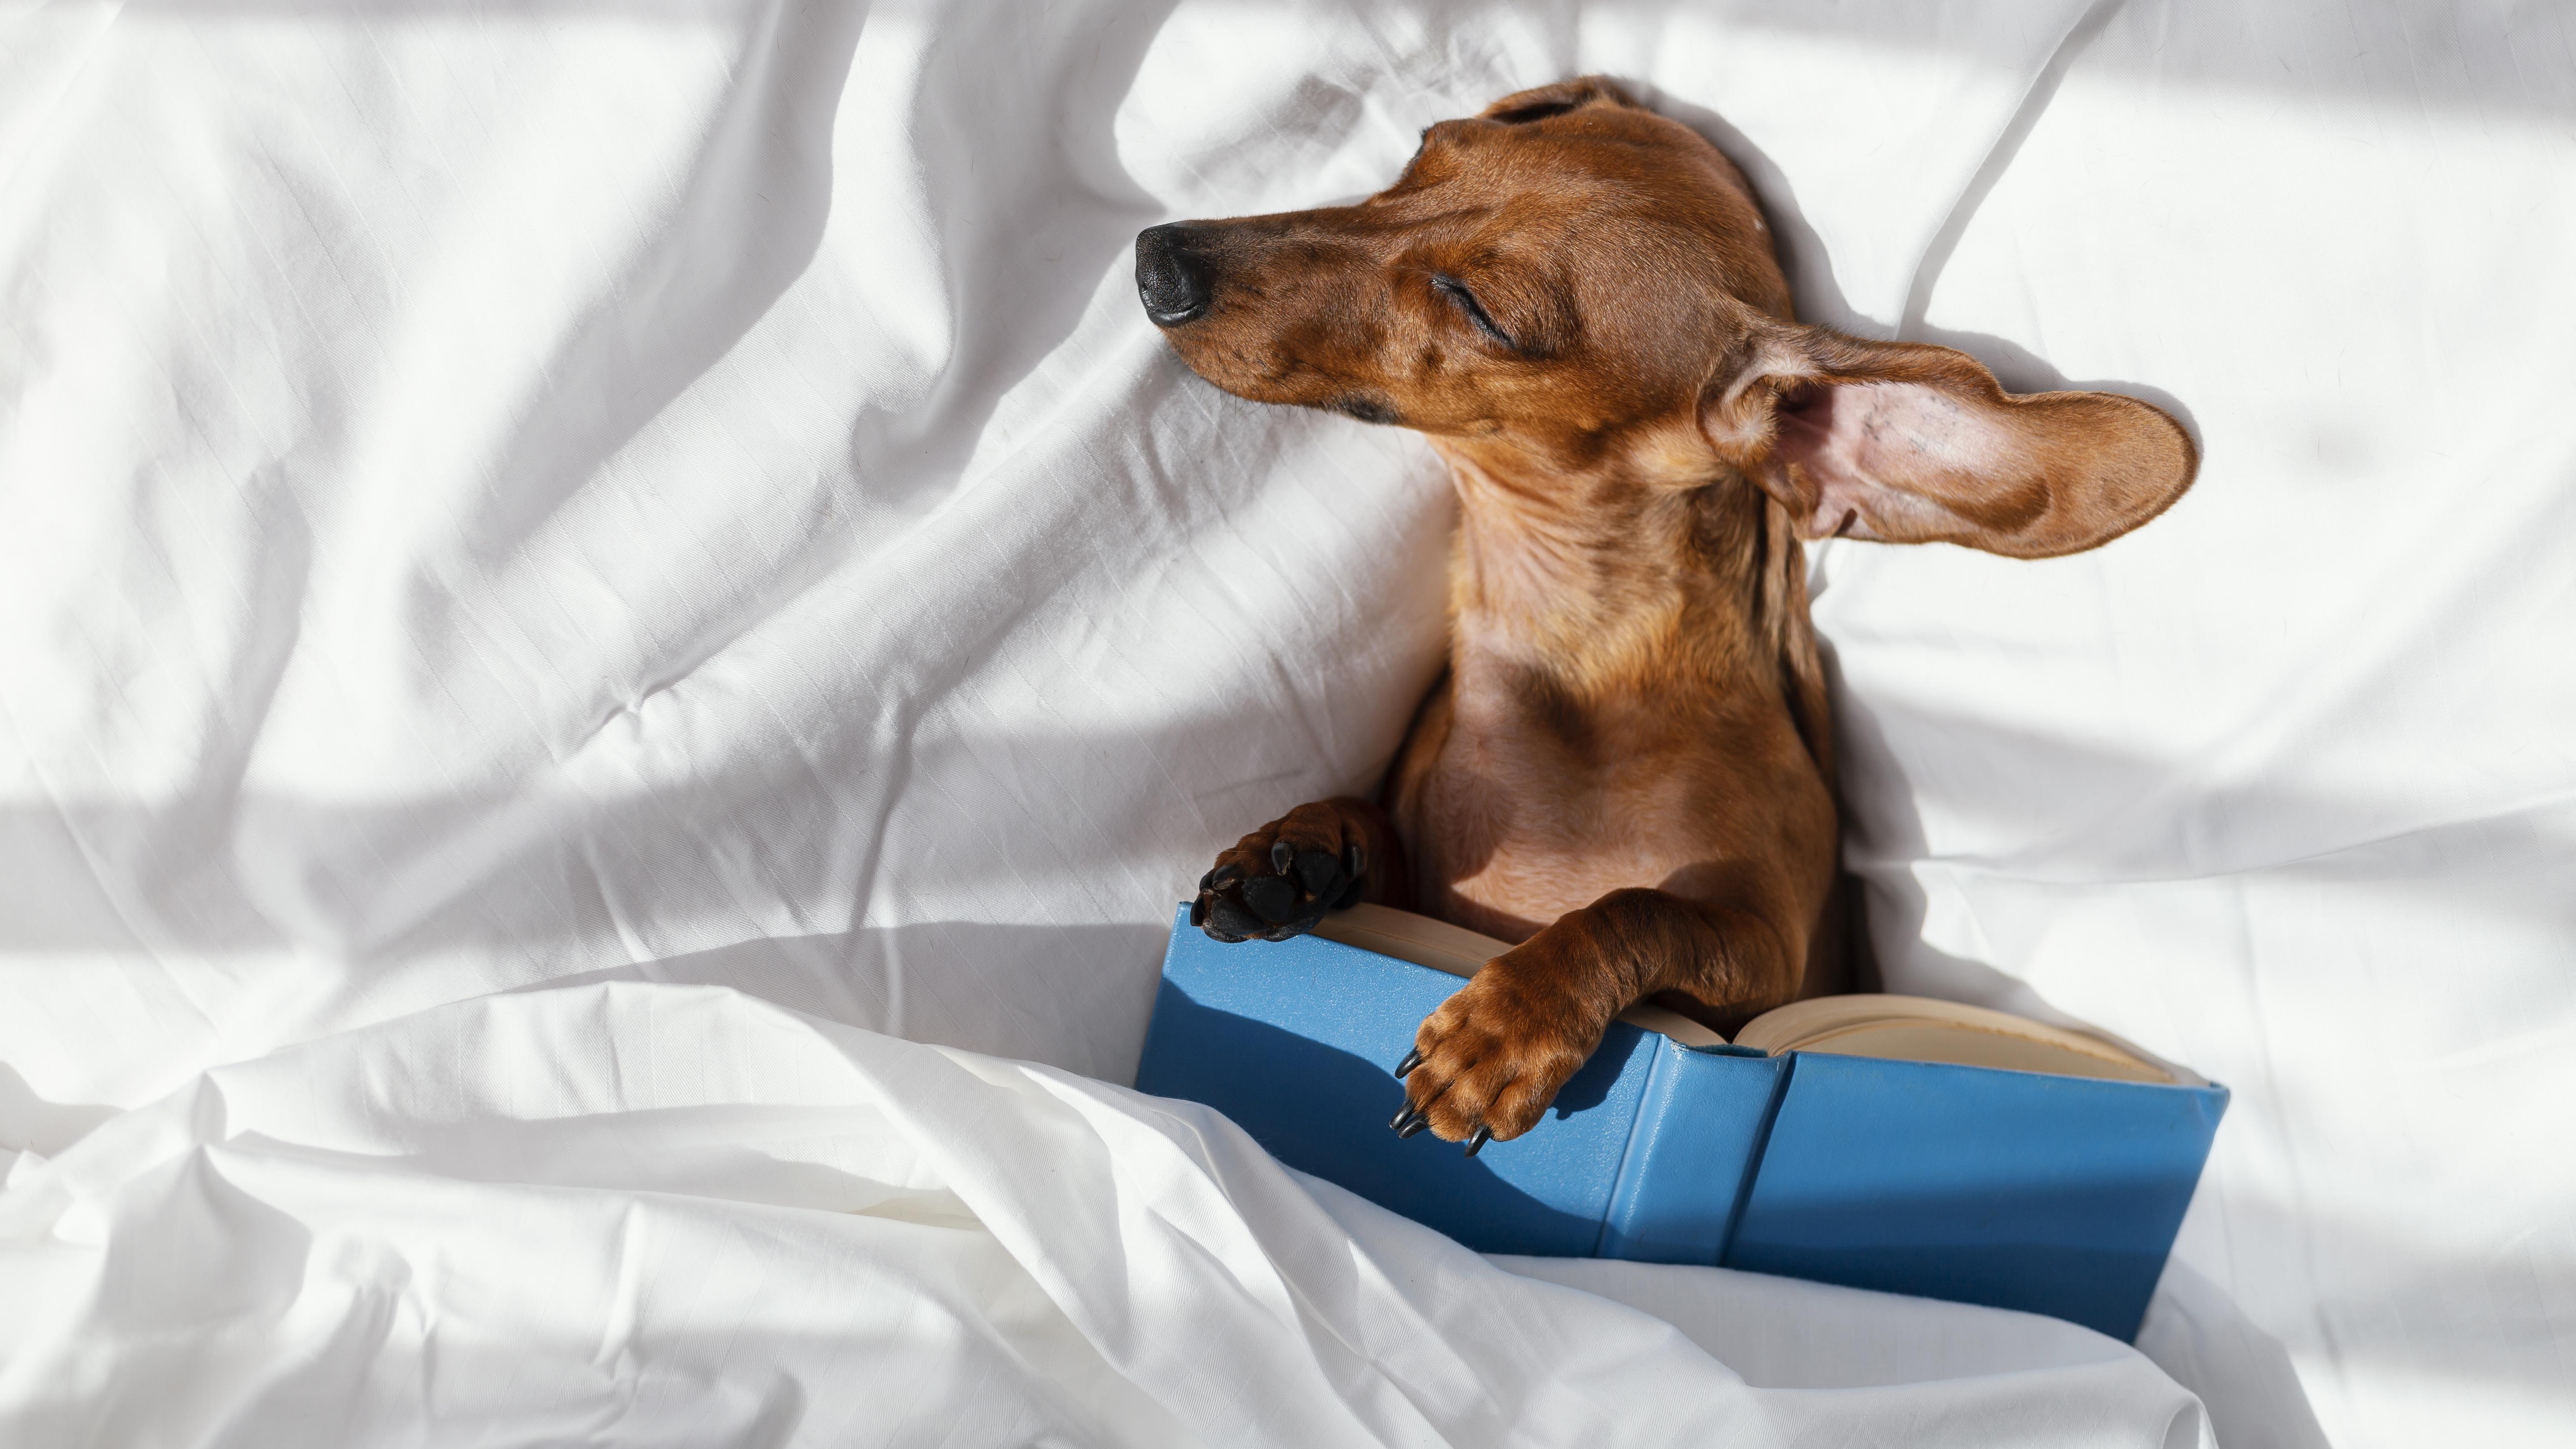 Mewah Anjing Sofa Bed - Haven Cozy pikeun Babaturan Furry Anjeun